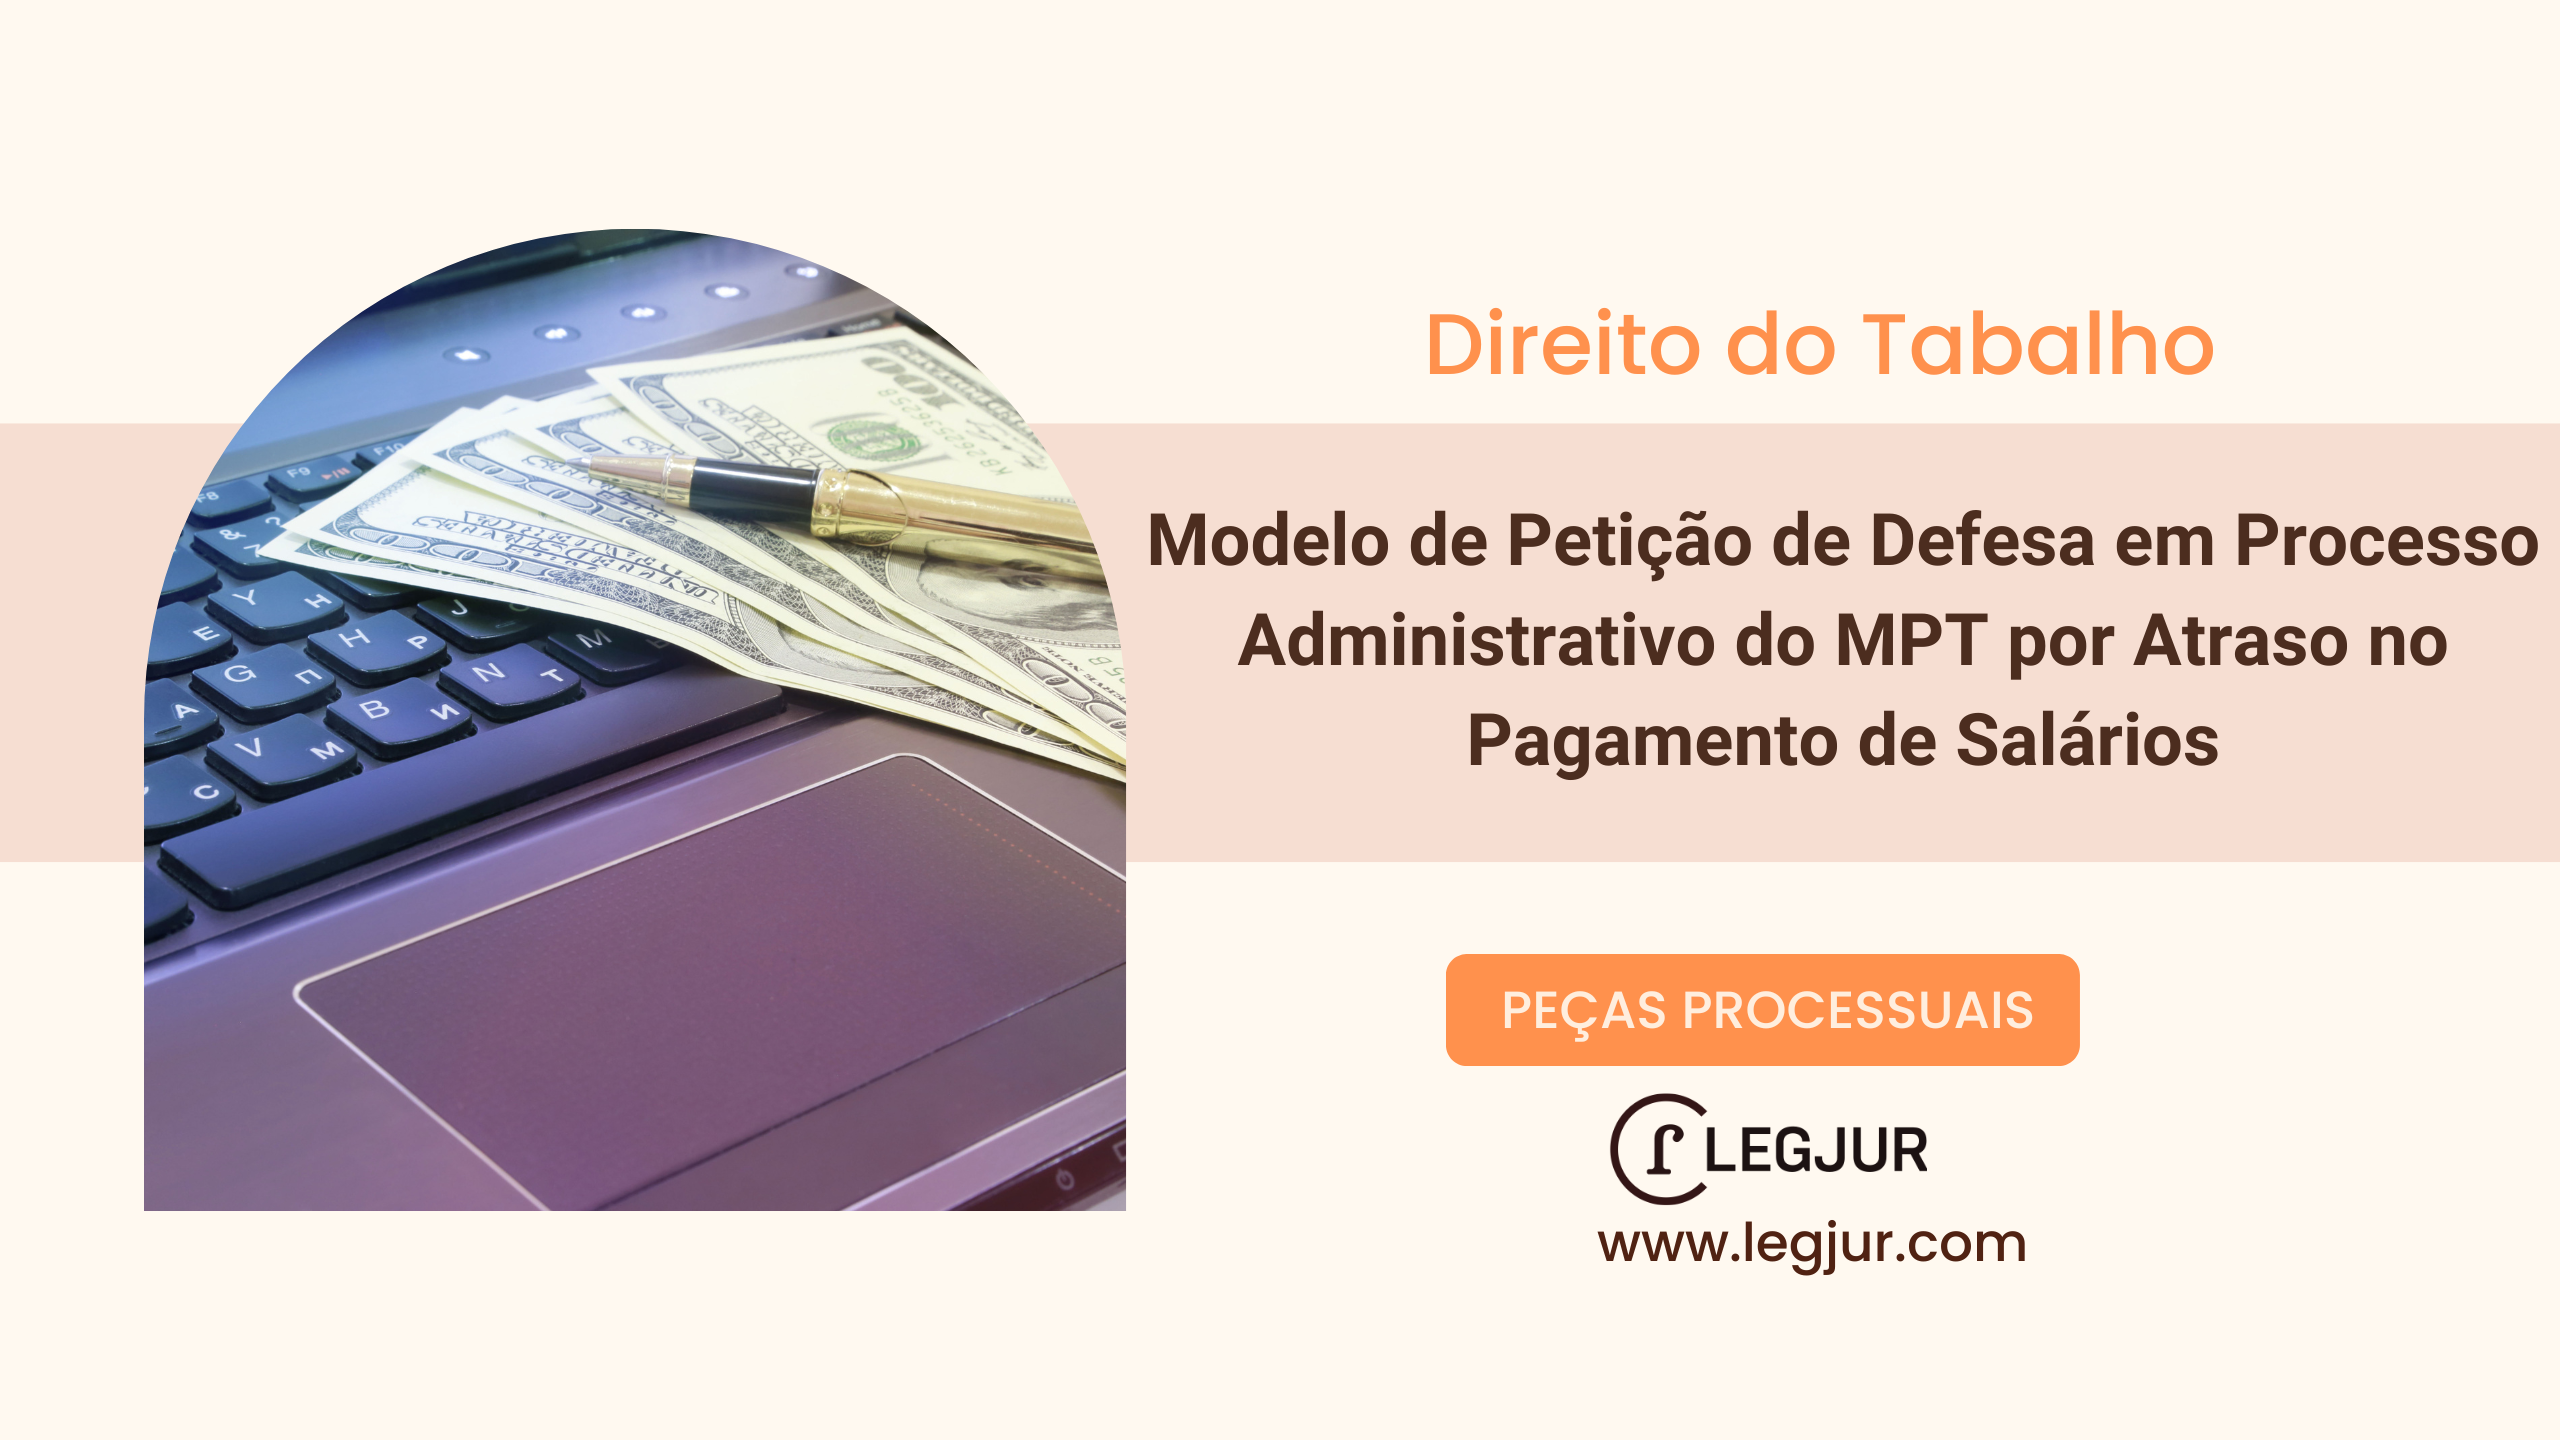 Modelo de Petição de Defesa em Processo Administrativo do MPT por Atraso no Pagamento de Salários